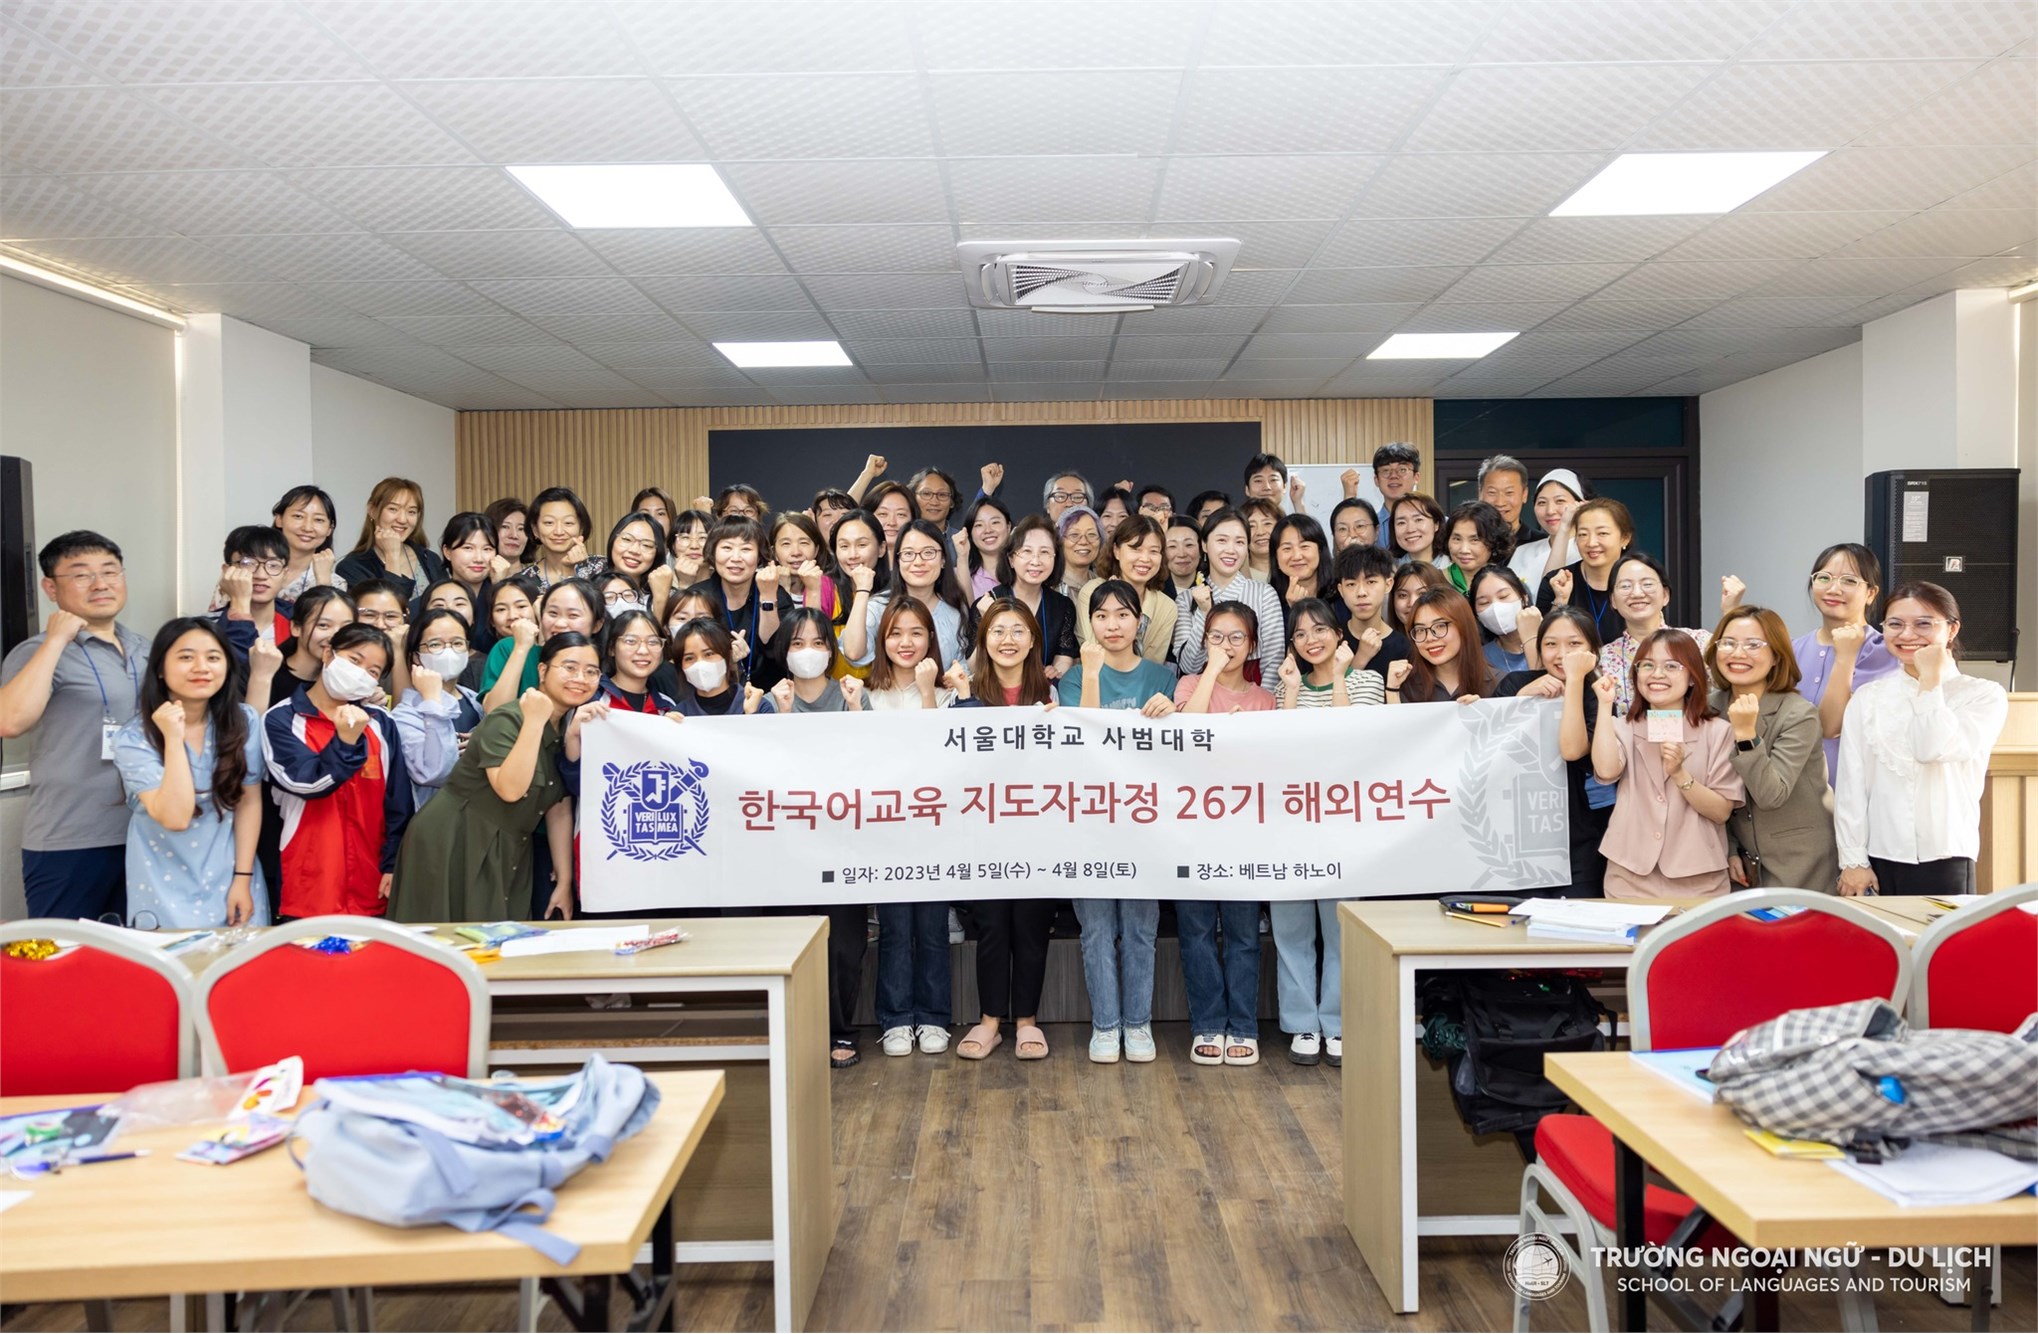 Giới thiệu ngành Ngôn ngữ Hàn Quốc